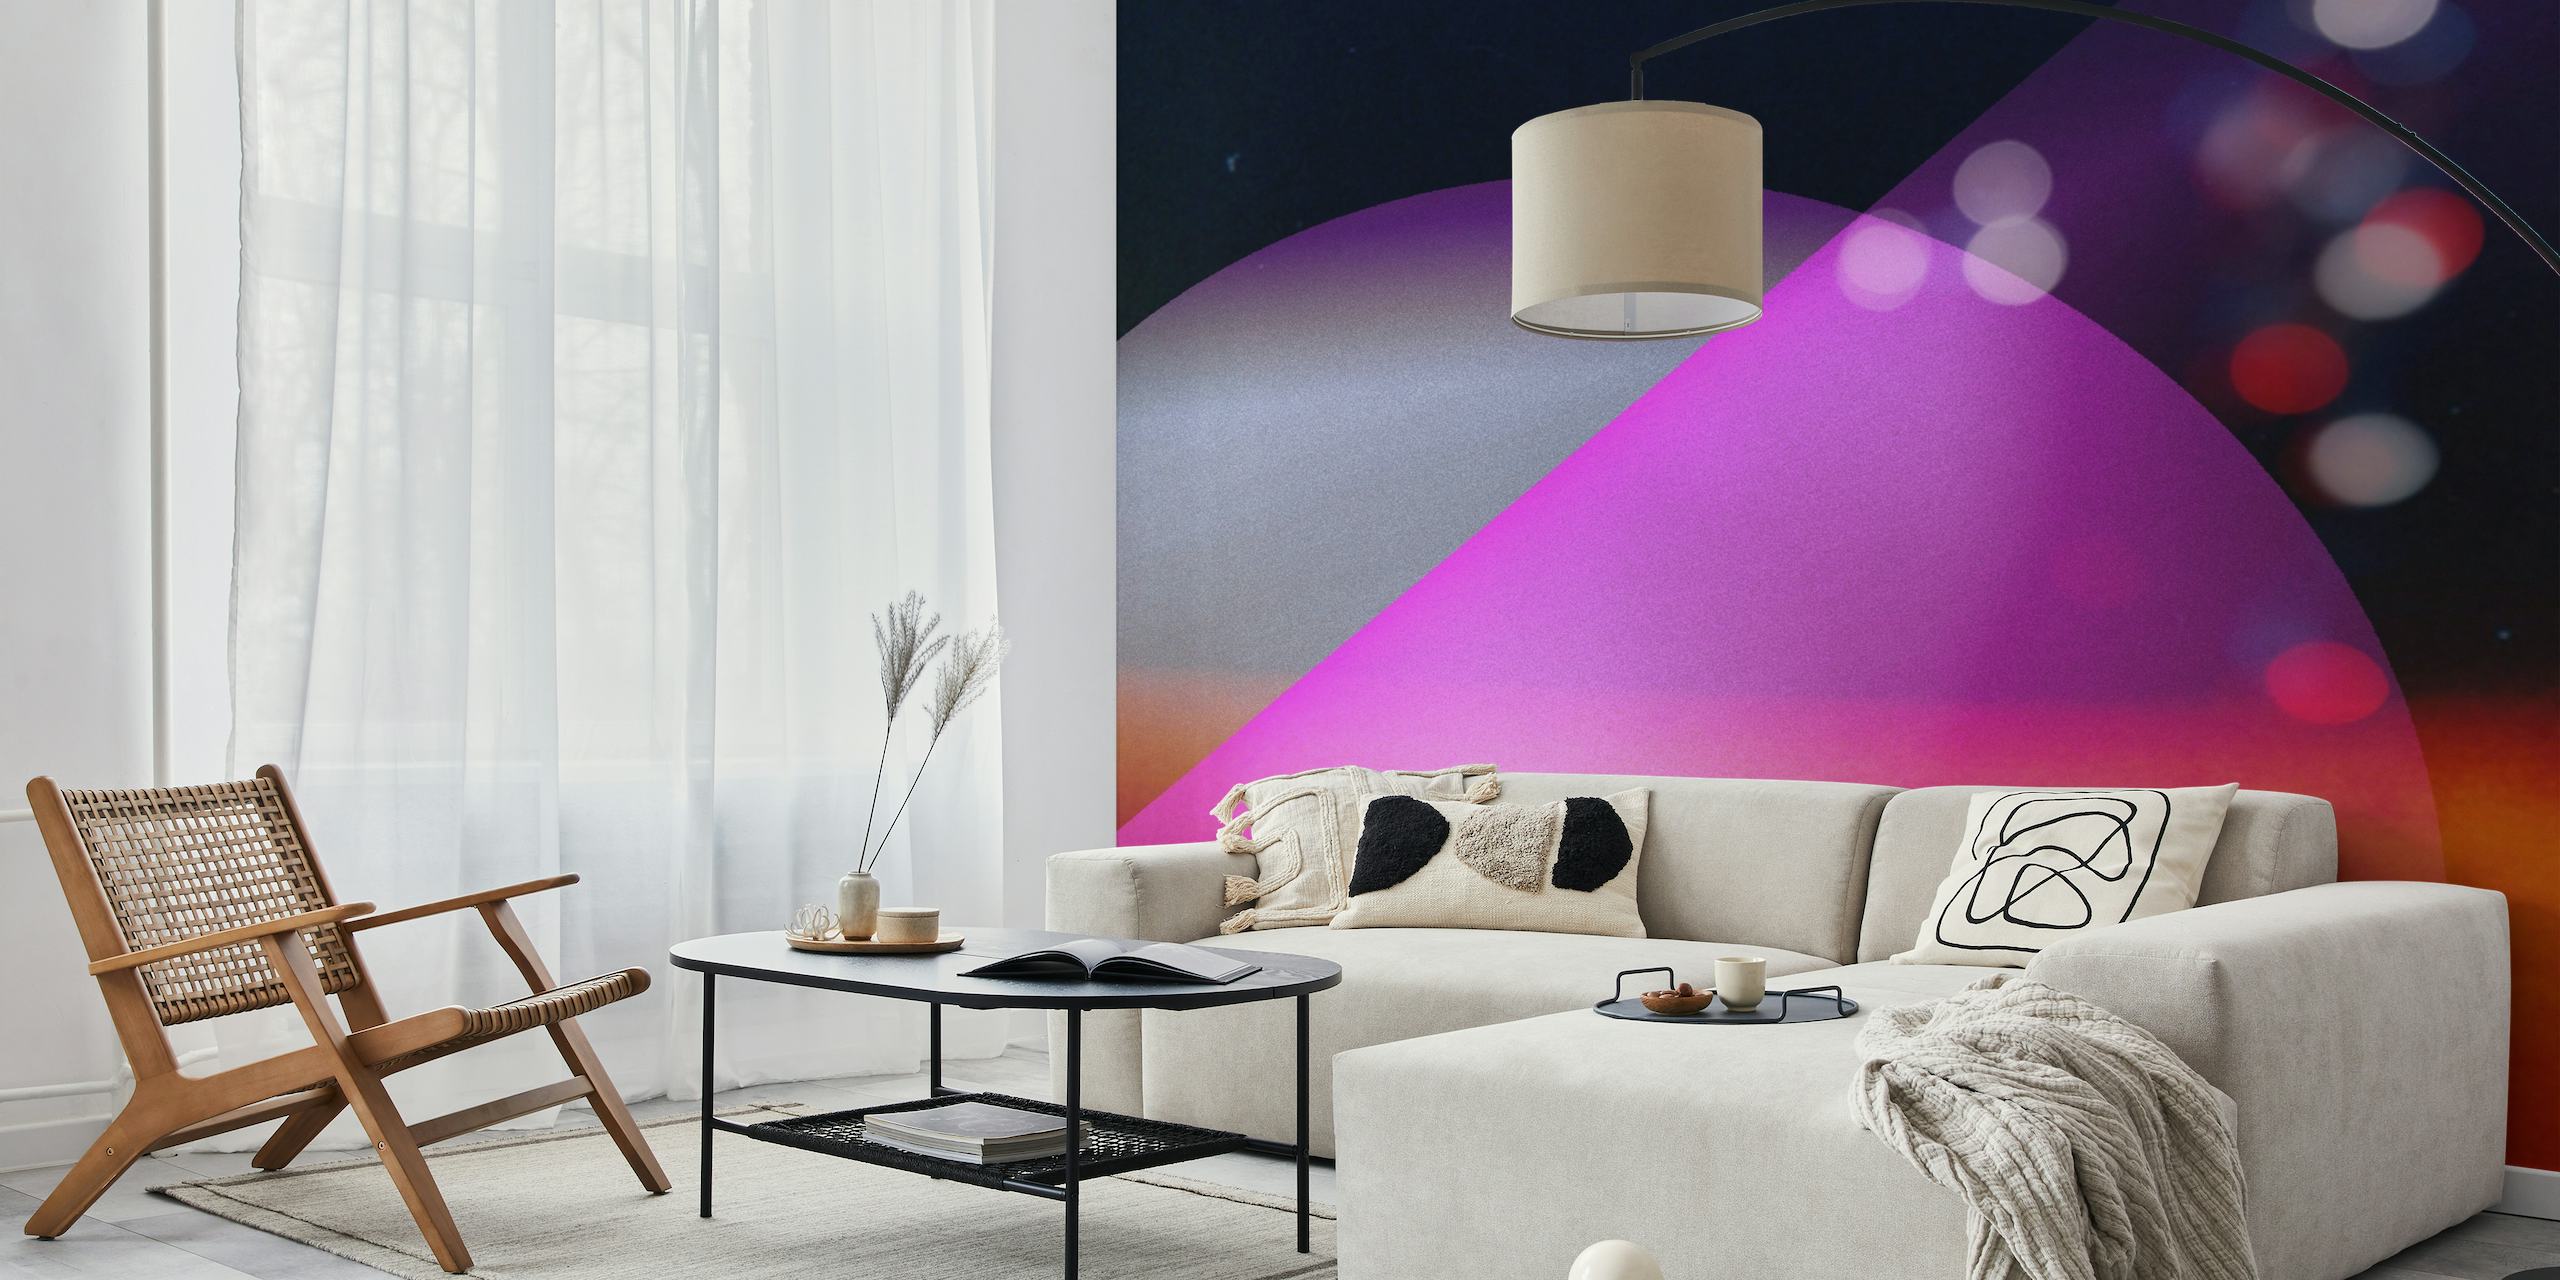 Mural de parede cósmico abstrato com roxos, azuis e rosa vibrantes que lembram um universo distante